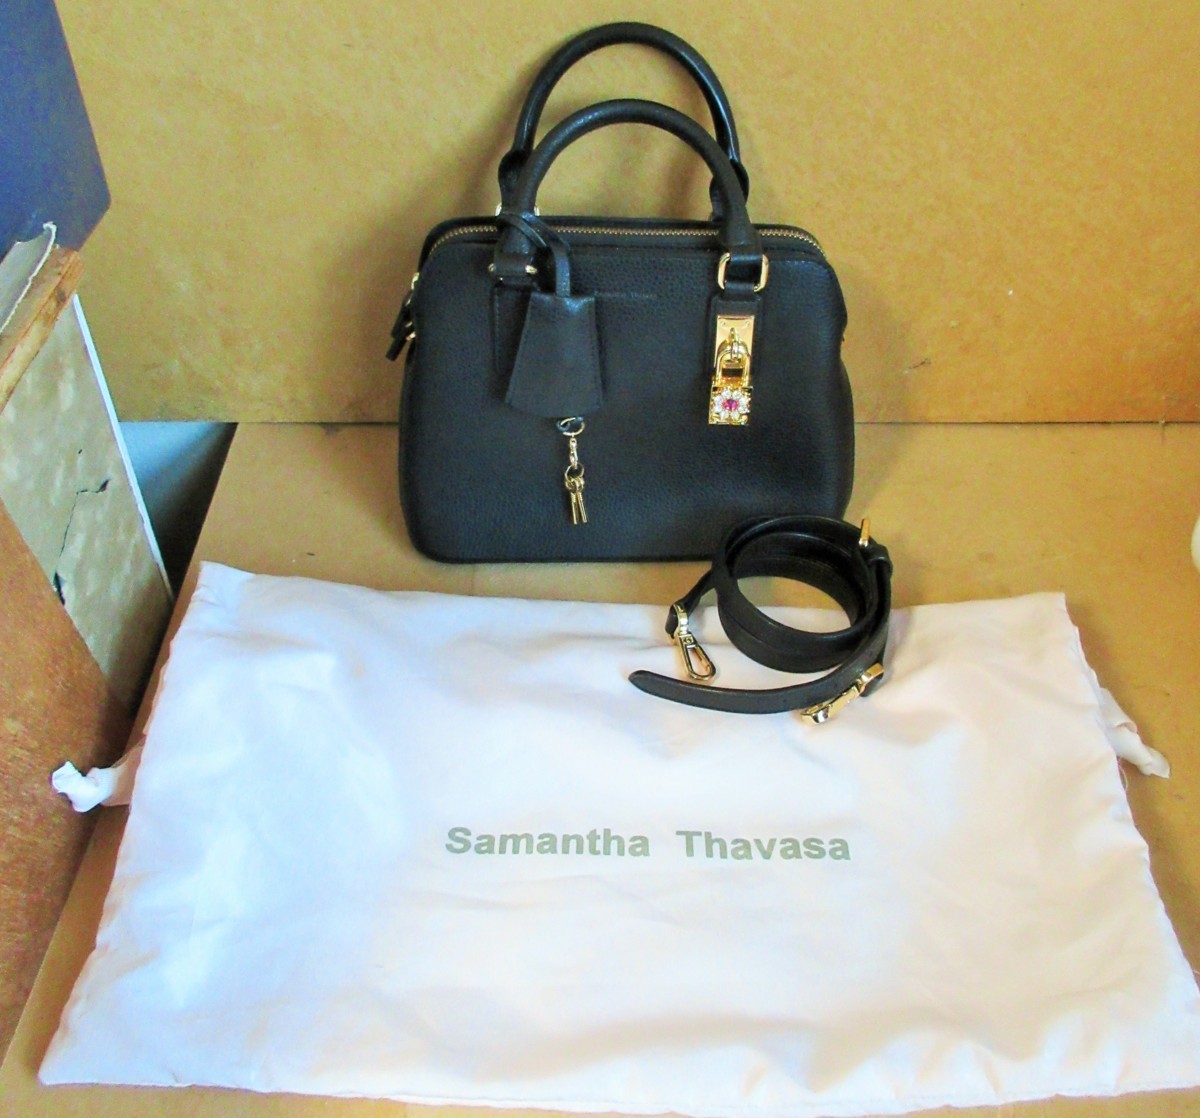 * Samantha Thavasa Samantha Thavasa 1810130261reti my n. ability to raise. bag black * stylish . lovely 4,991 jpy 